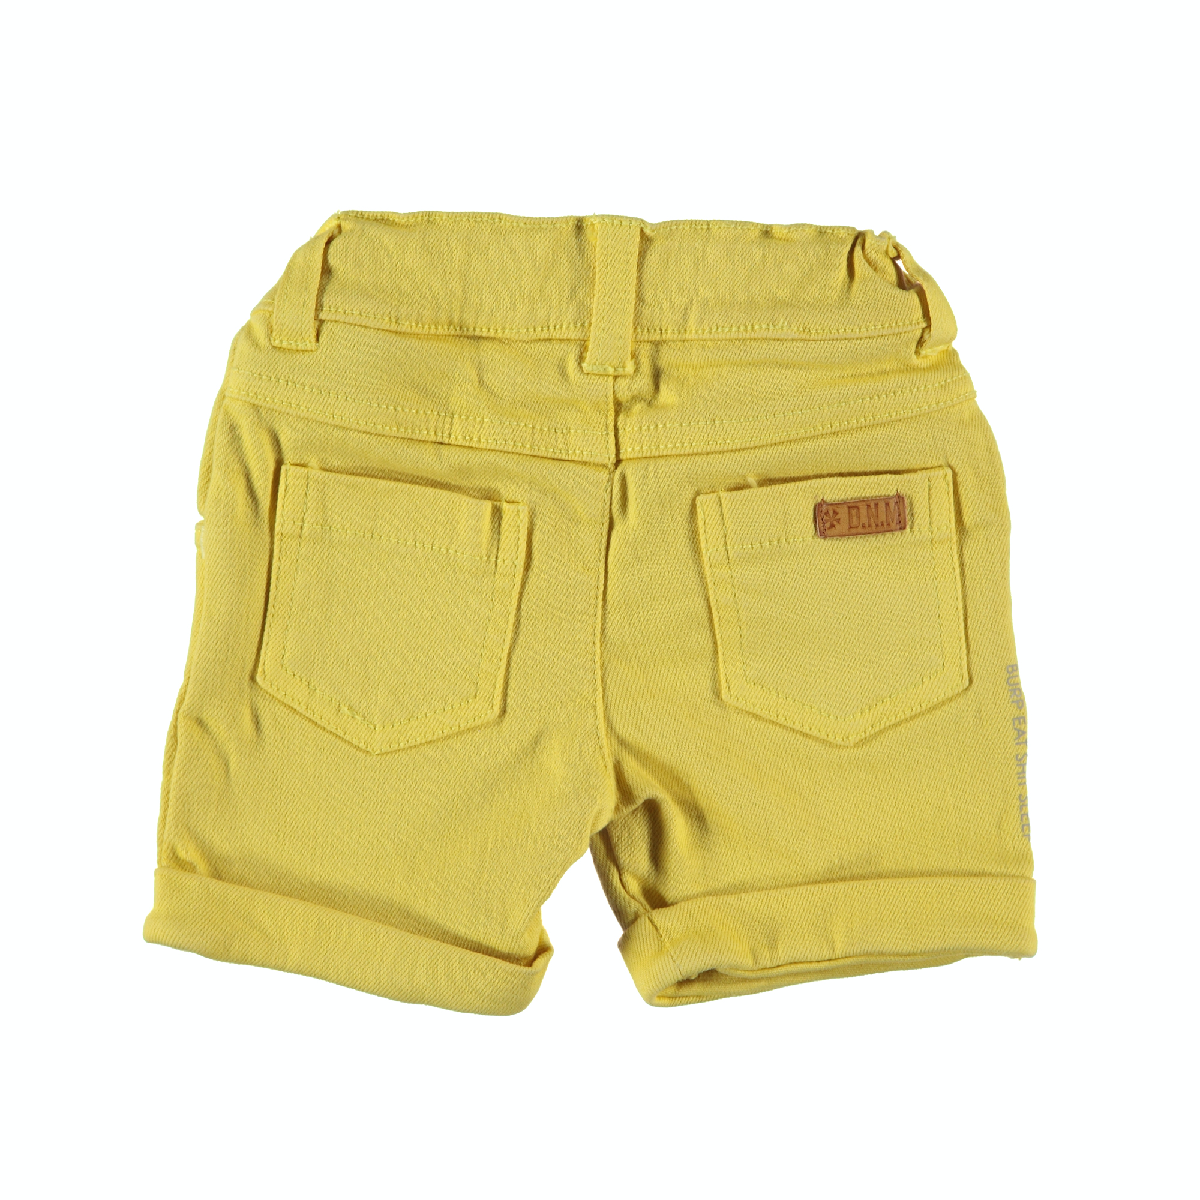 Jongens Shorts Denim van B.E.S.S. in de kleur Yellow in maat 68.